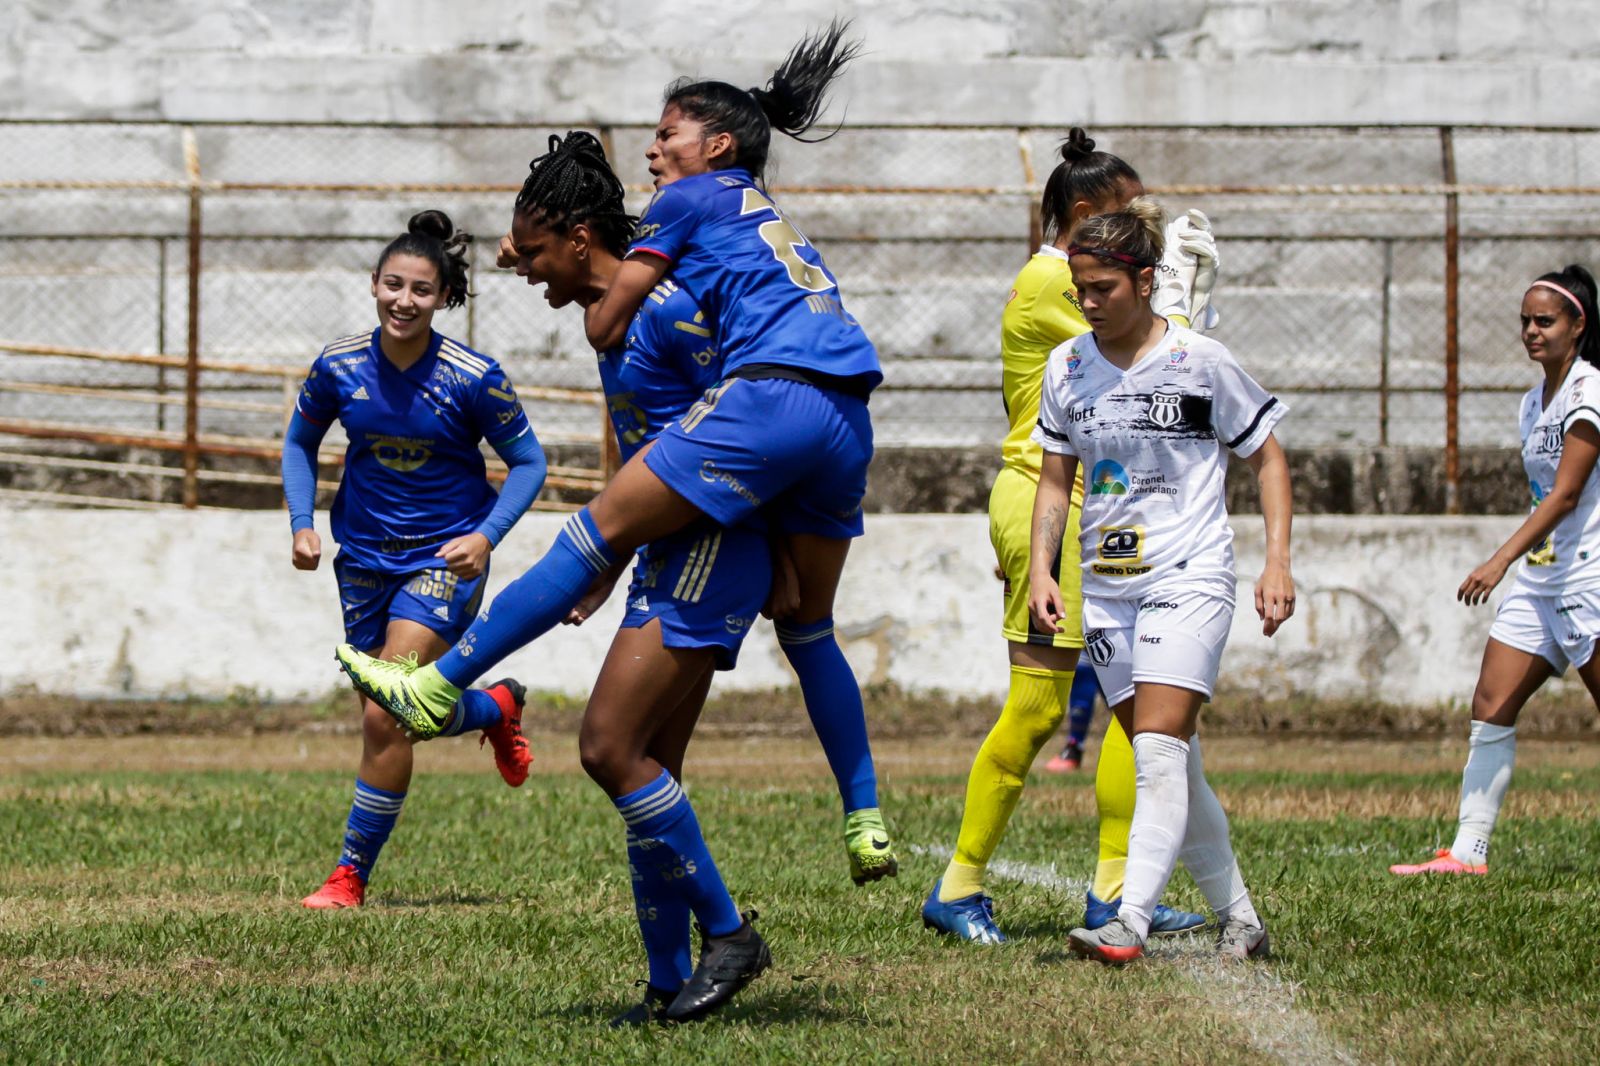 Cabulosas vencem mais uma vez por 2 a 1 e assumem a liderança do Campeonato Mineiro Feminino